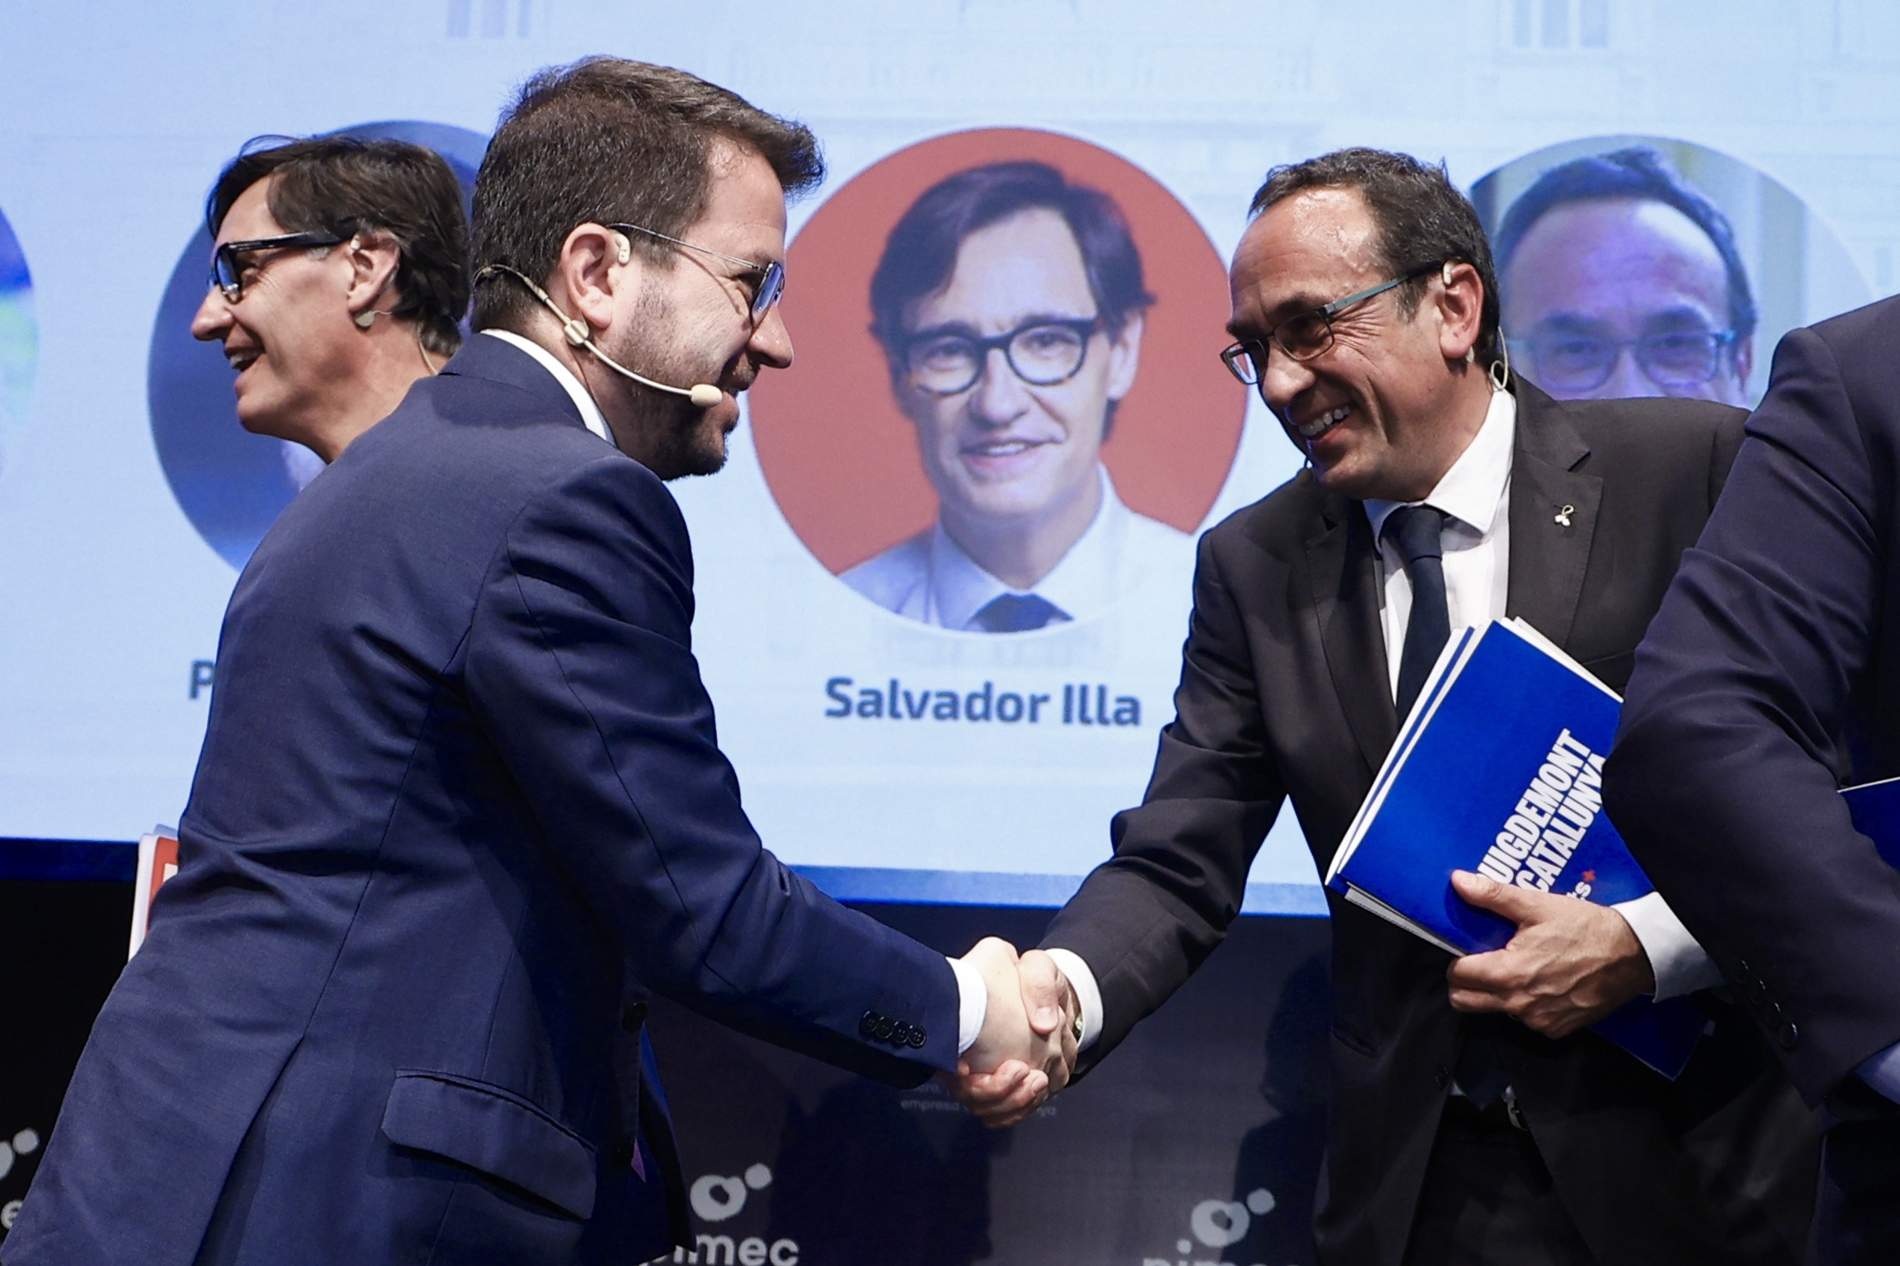 Aragonès reprocha la ausencia de Puigdemont en un debate y Rull se revuelve: "Debería ser sensible"